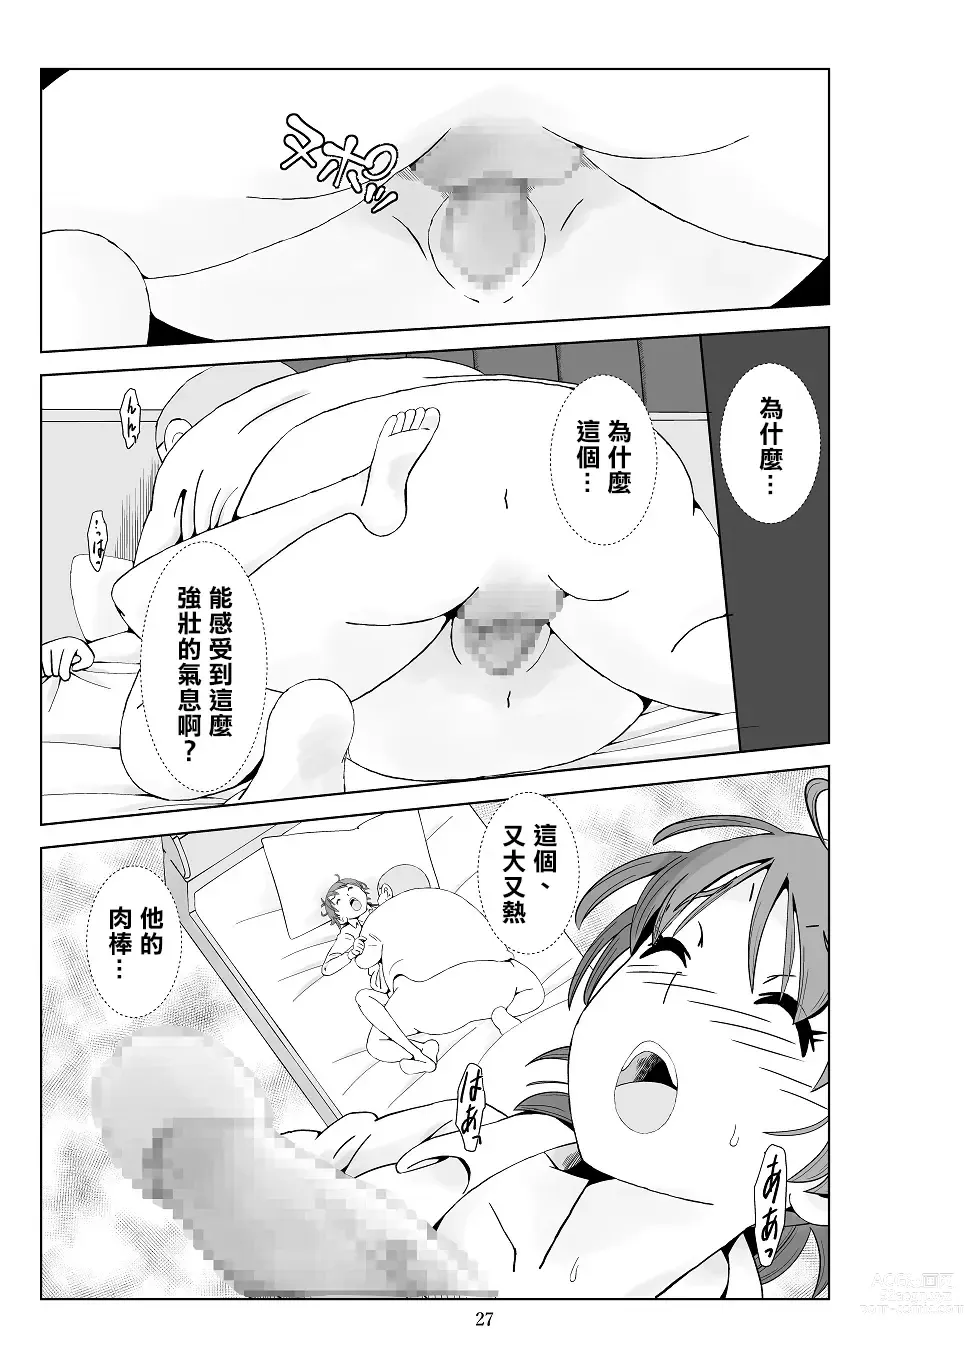 Page 29 of doujinshi Futoshi 3